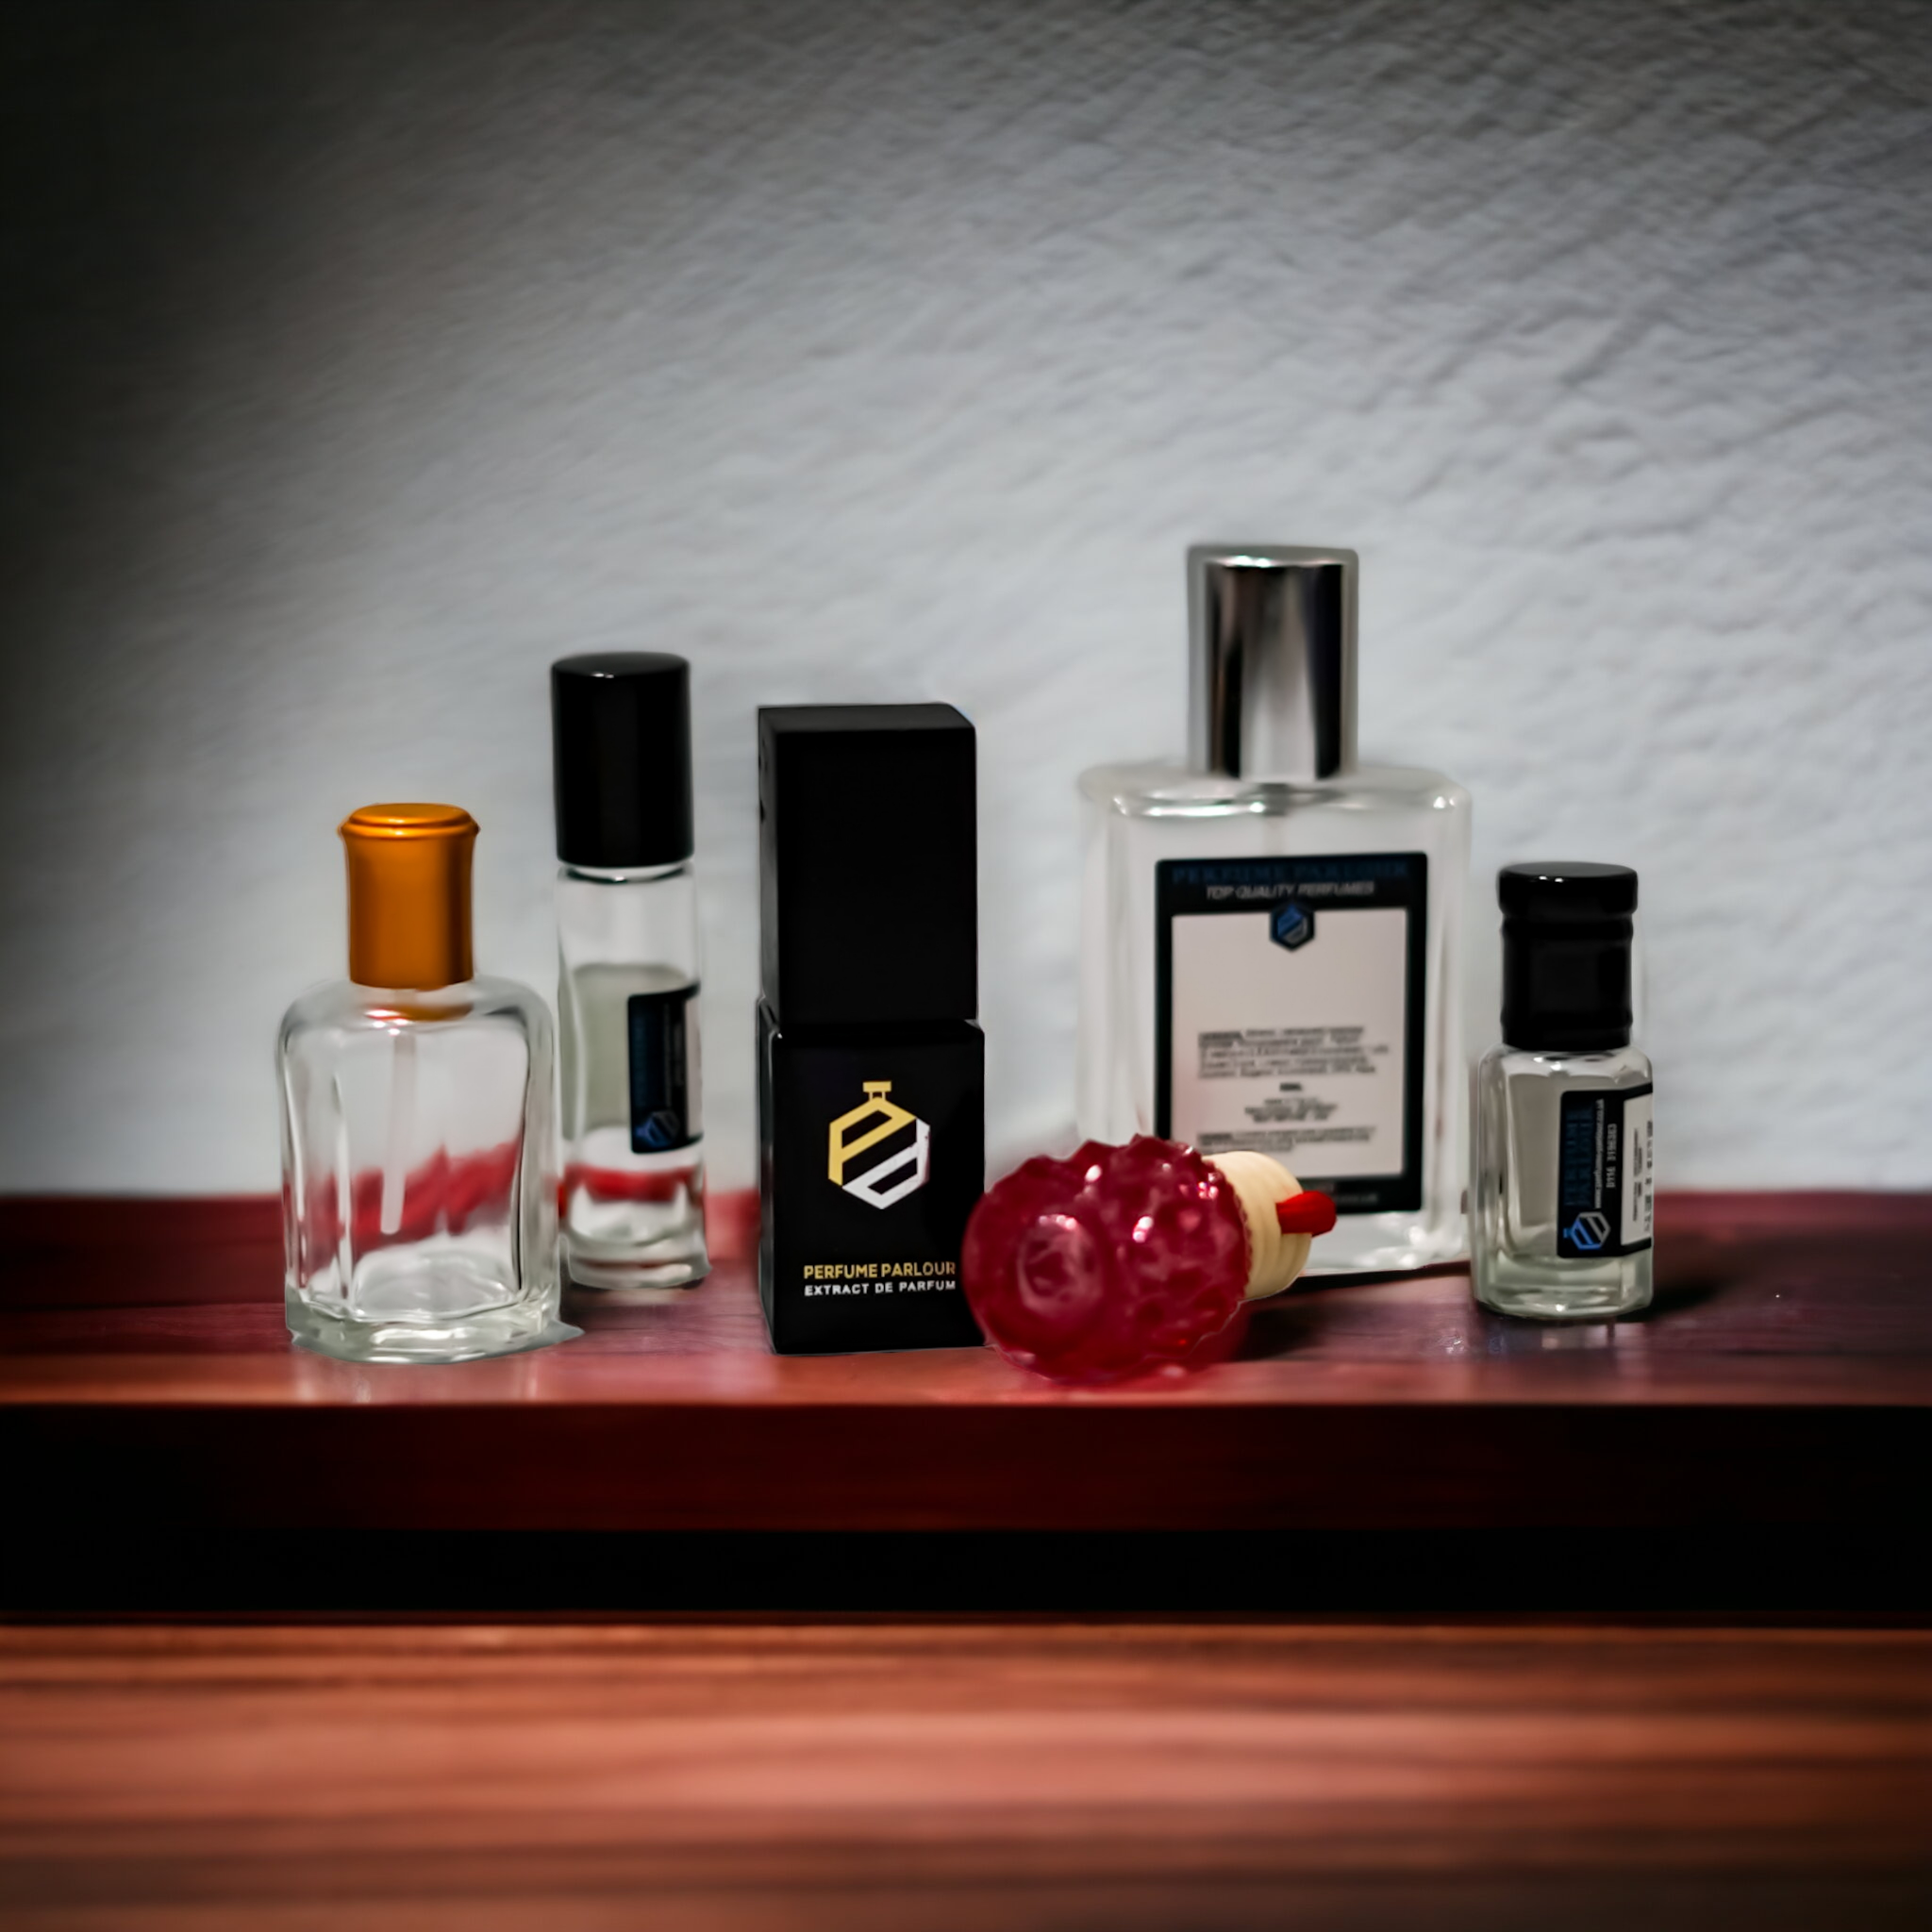 NEW LOUIS VUITTON Parfum PERFUME Heures d'Absence Mini Bottle